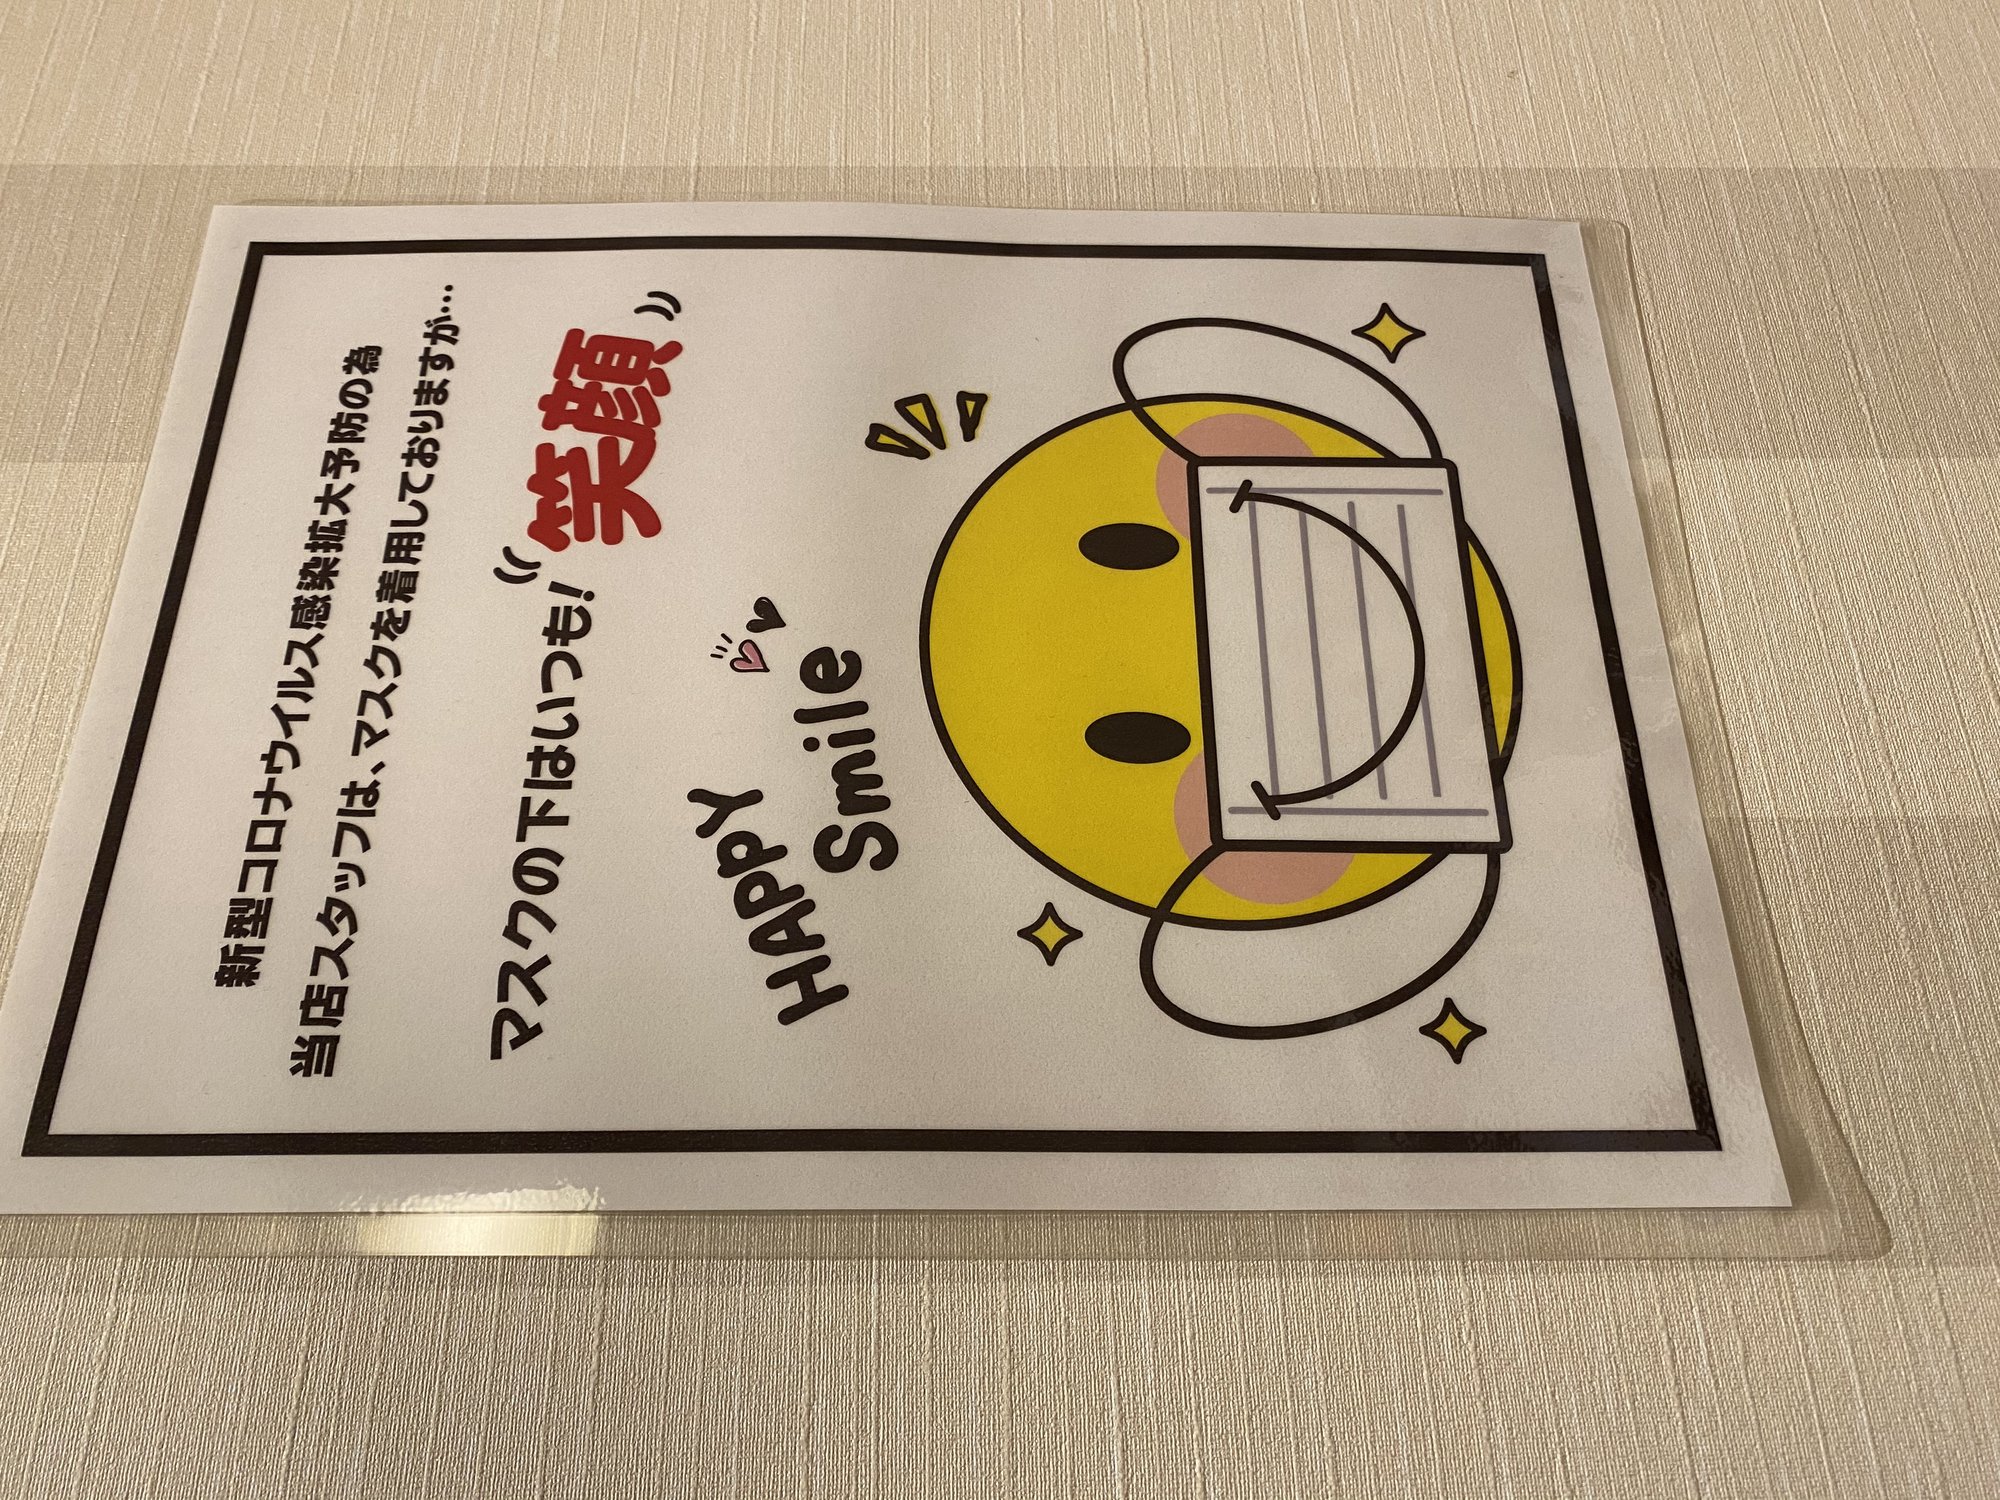 マスクの中は笑顔 神戸で人気の美容院パシフィックダズール公式webサイト 西区 垂水区